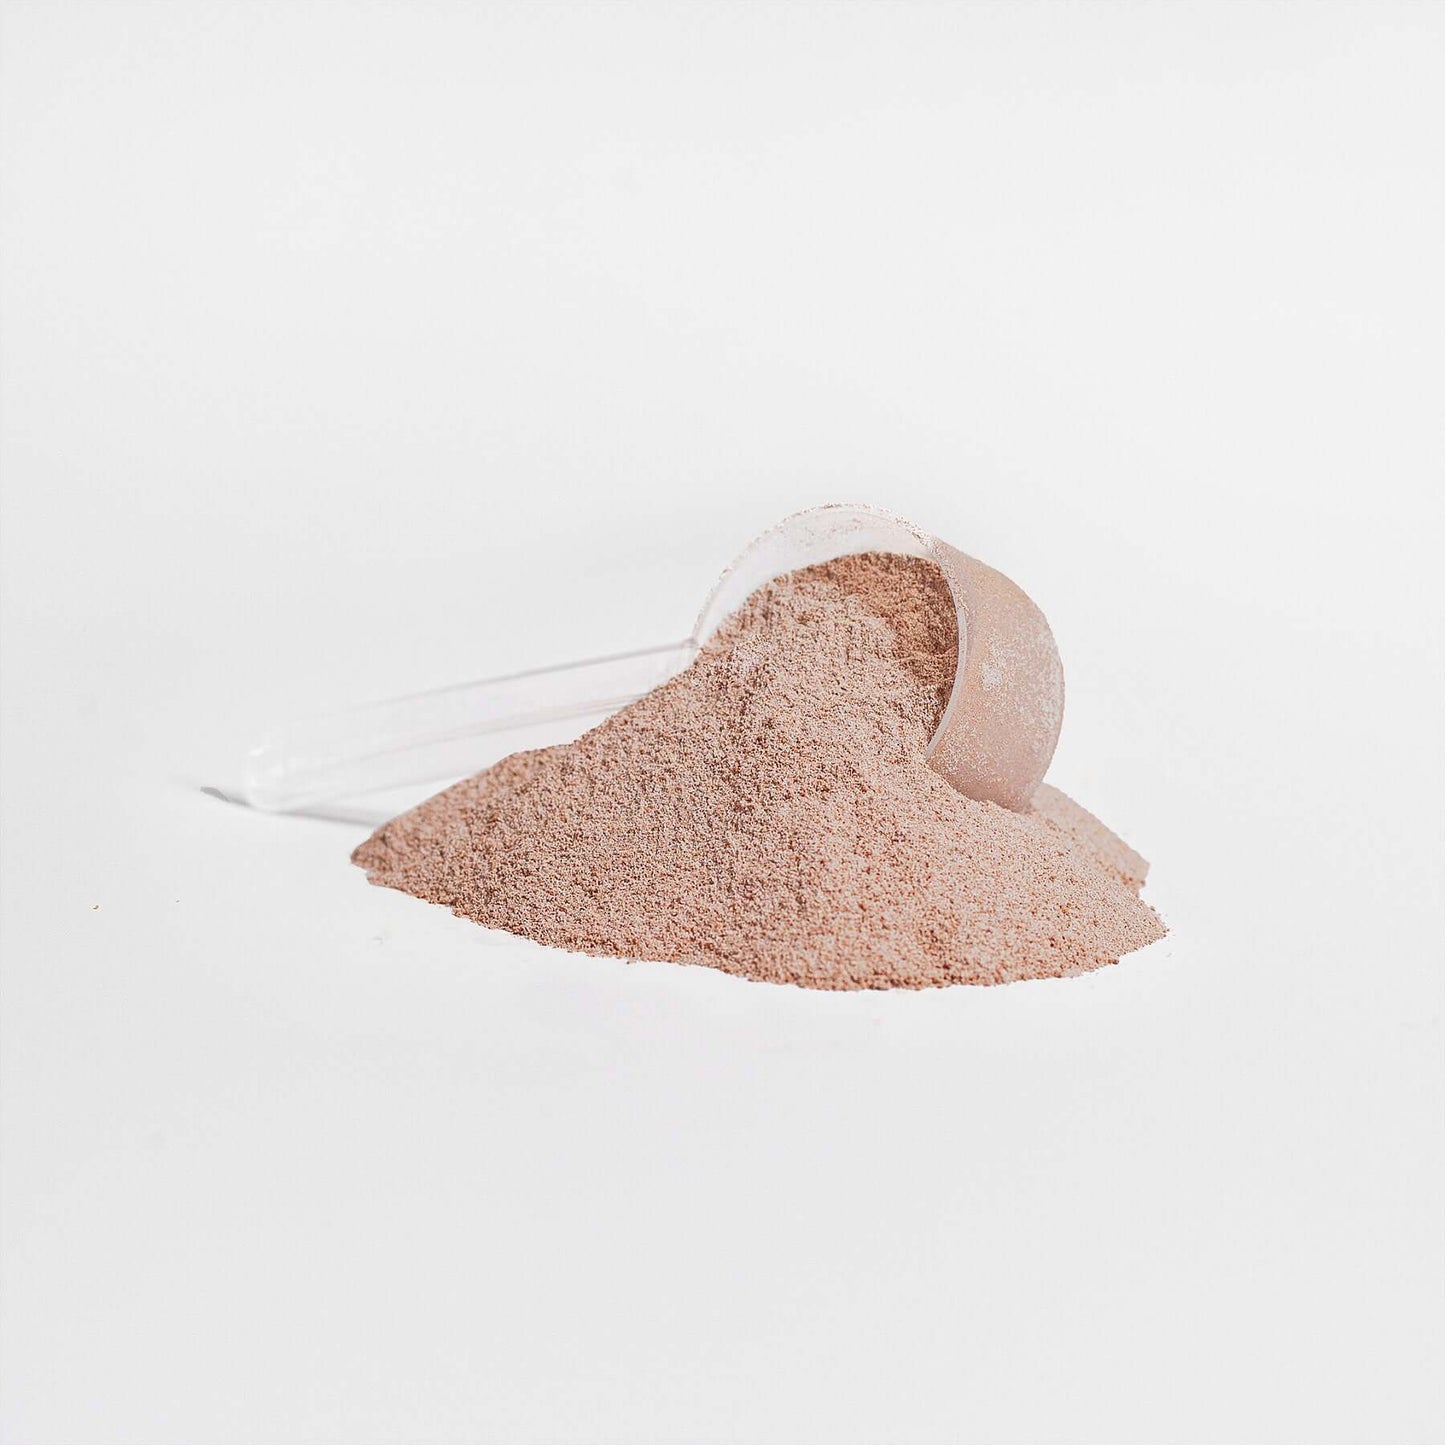 Grass-Fed Collagen Peptides (Chocolate Powder) 378g (13.33oz)